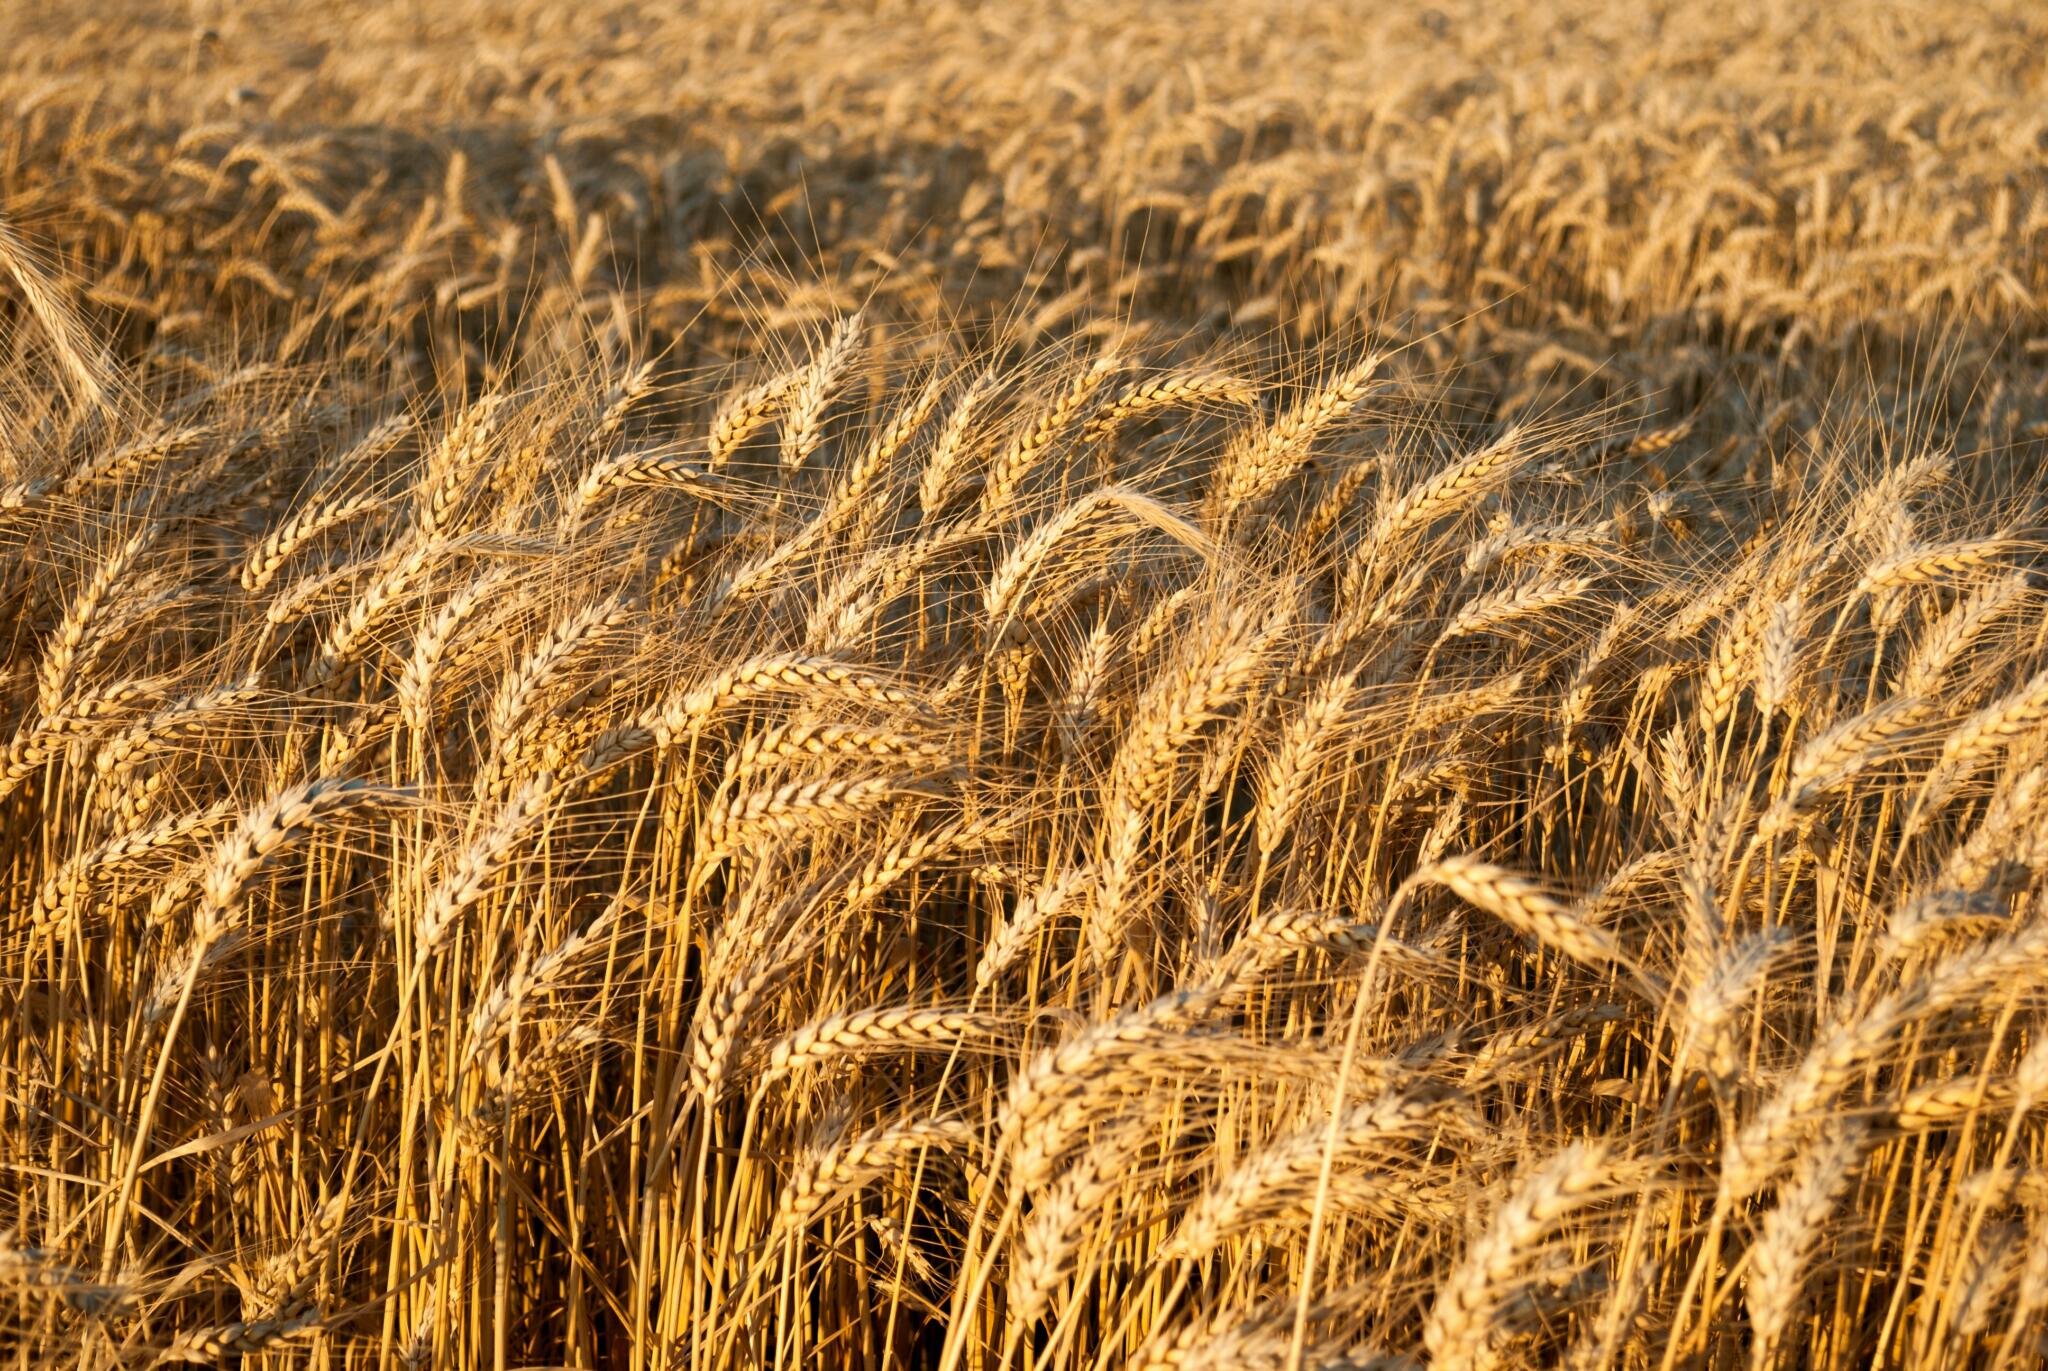 俄烏戰爭恐引爆小麥價格飆升 這個國家將受創最深